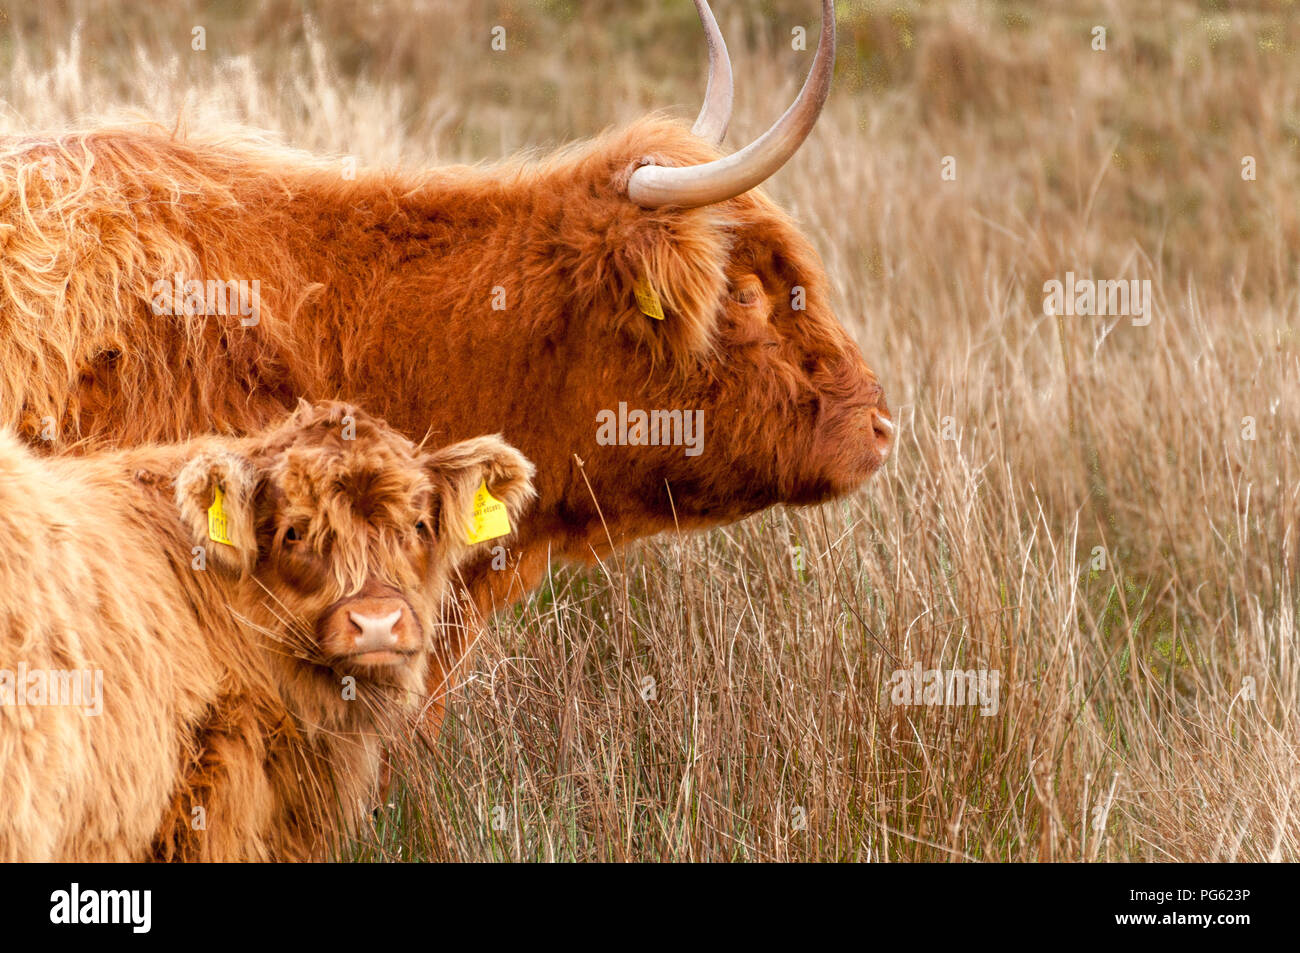 Une vache et son veau Highland, à la recherche de l'appareil photo, dans l'herbe haute en hiver. Islay, Ecosse, Royaume-Uni Banque D'Images